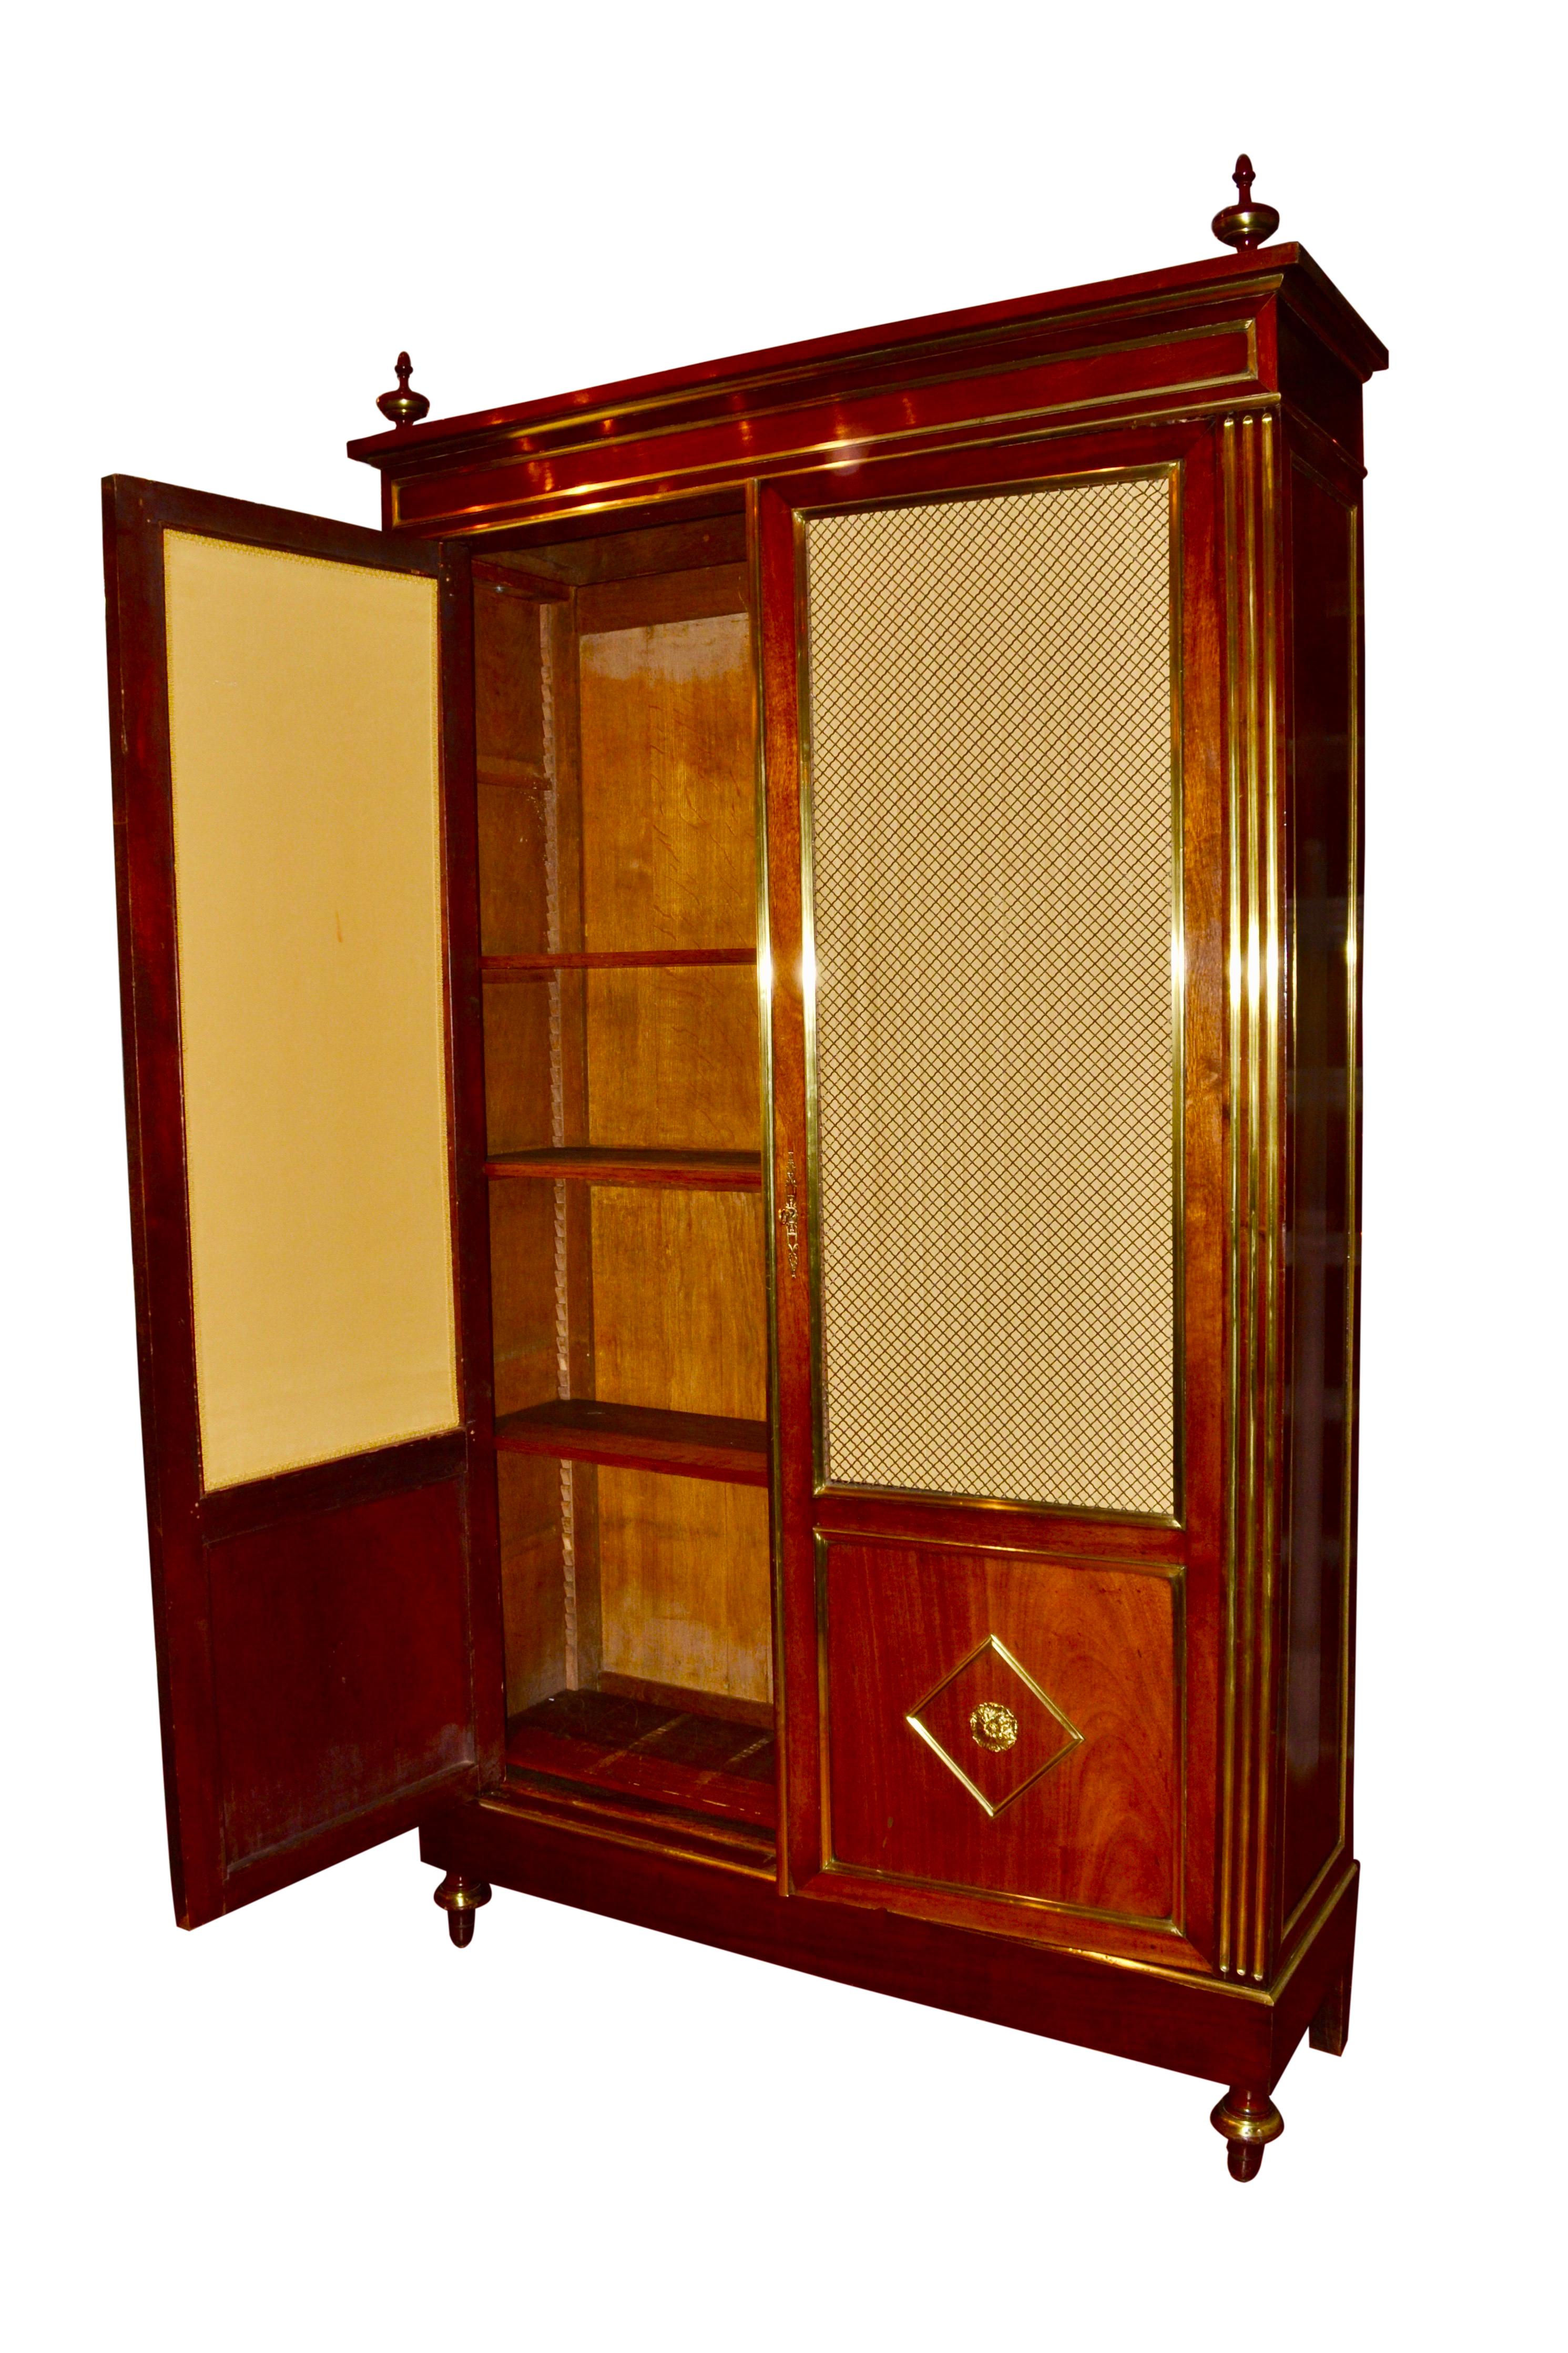 Eine elegante Louis XVI-Stil Bücherregal / Vitrine, die Mahagoni-Gehäuse reich mit vergoldetem Messing Filets auf die beiden vorderen Türen und beide Seiten eingelegt, hat jede Tür ein Drei-Viertel-Panel von offenen Messing-Gitter arbeiten über das